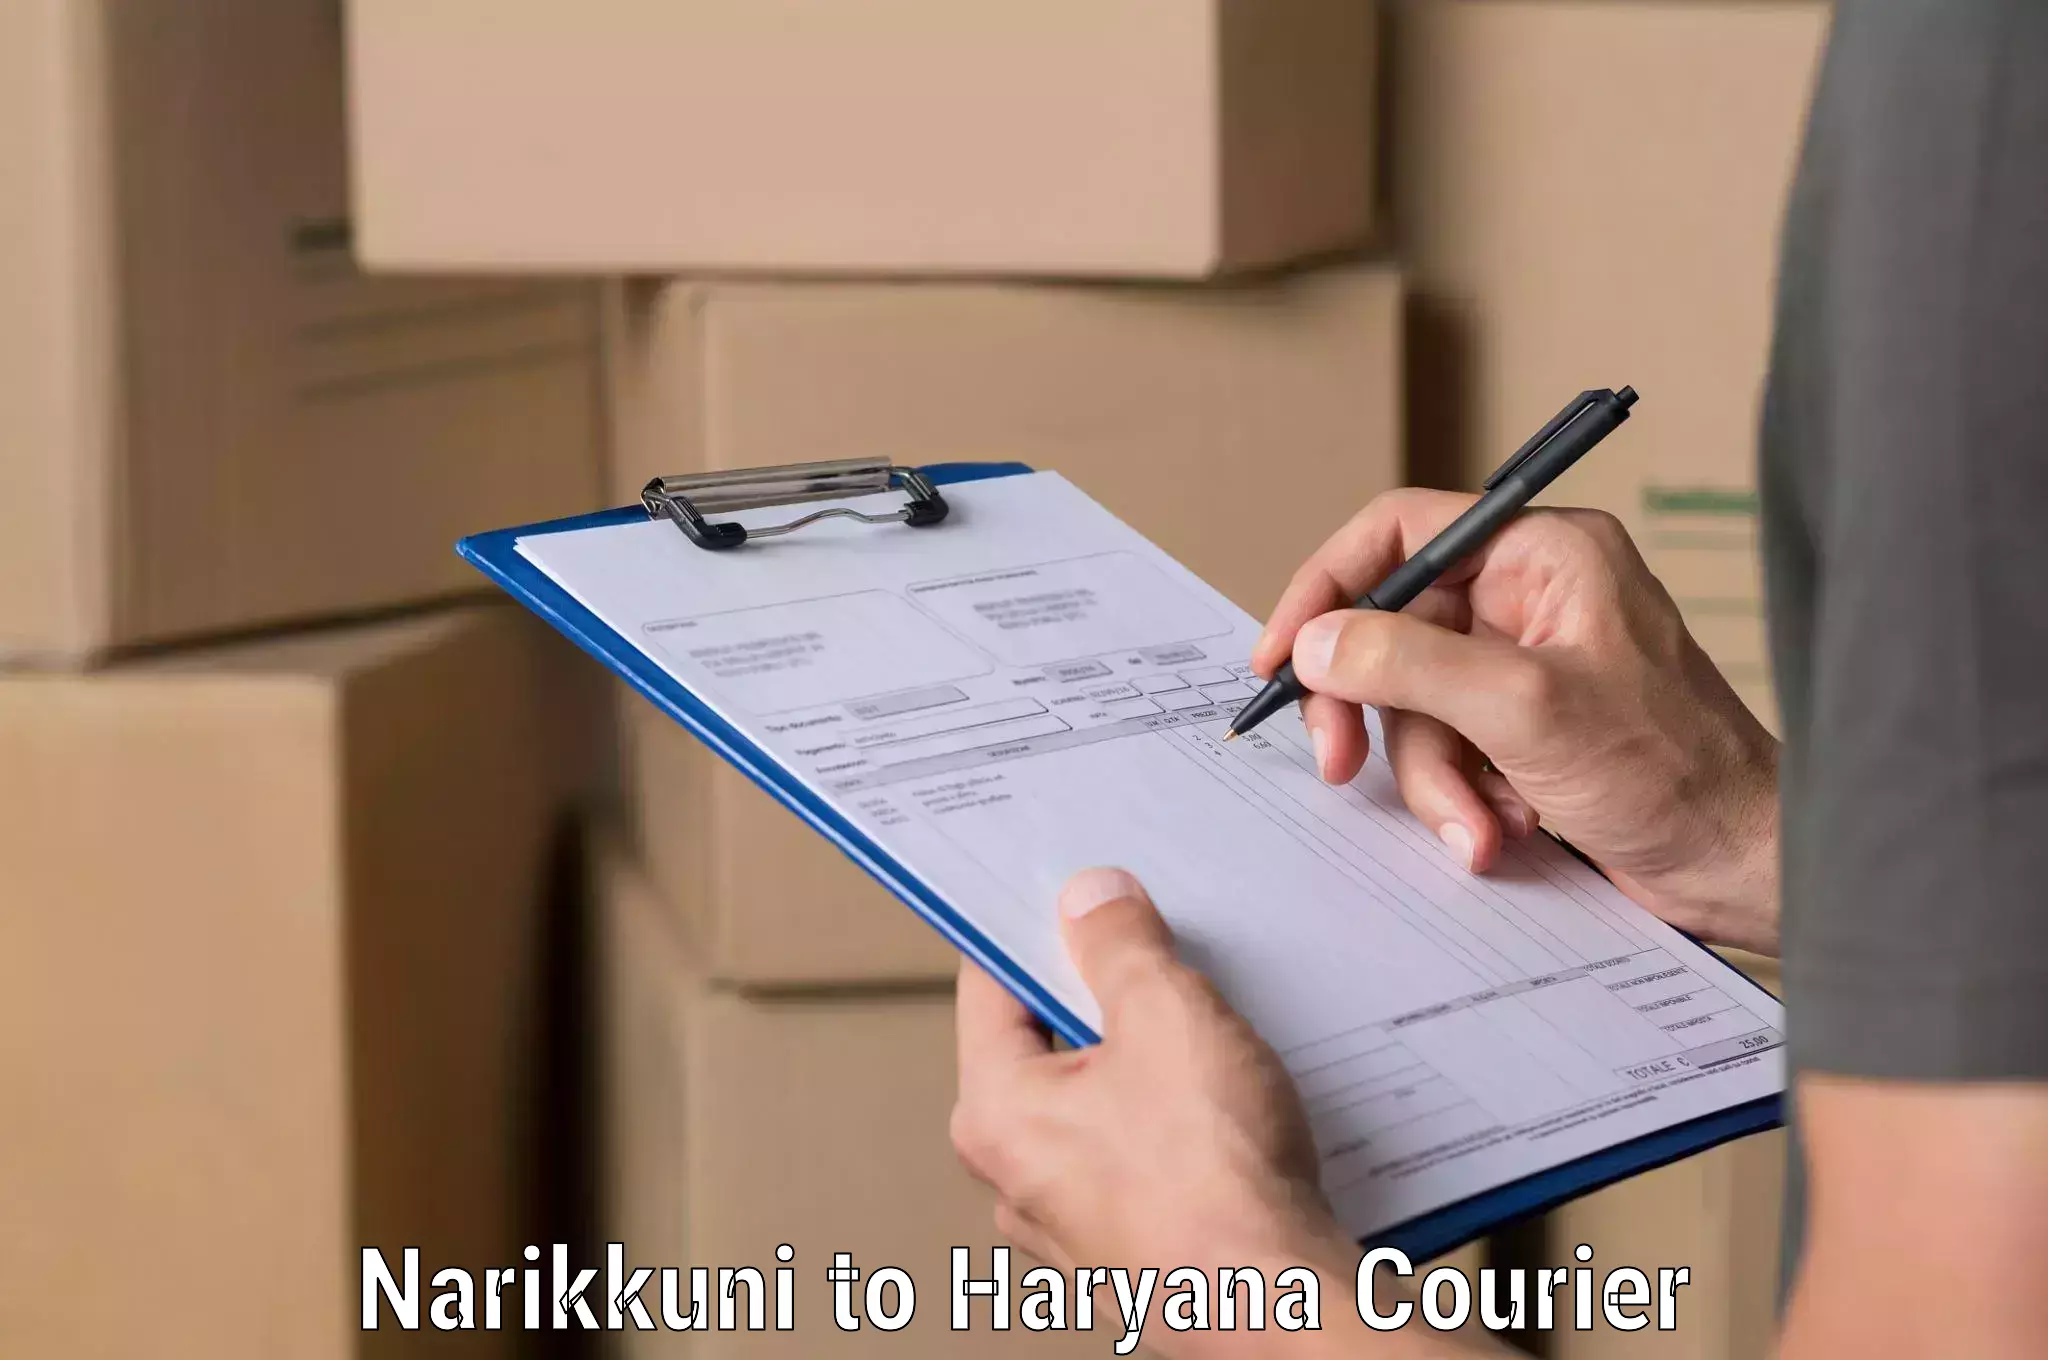 Urgent courier needs Narikkuni to Kurukshetra University